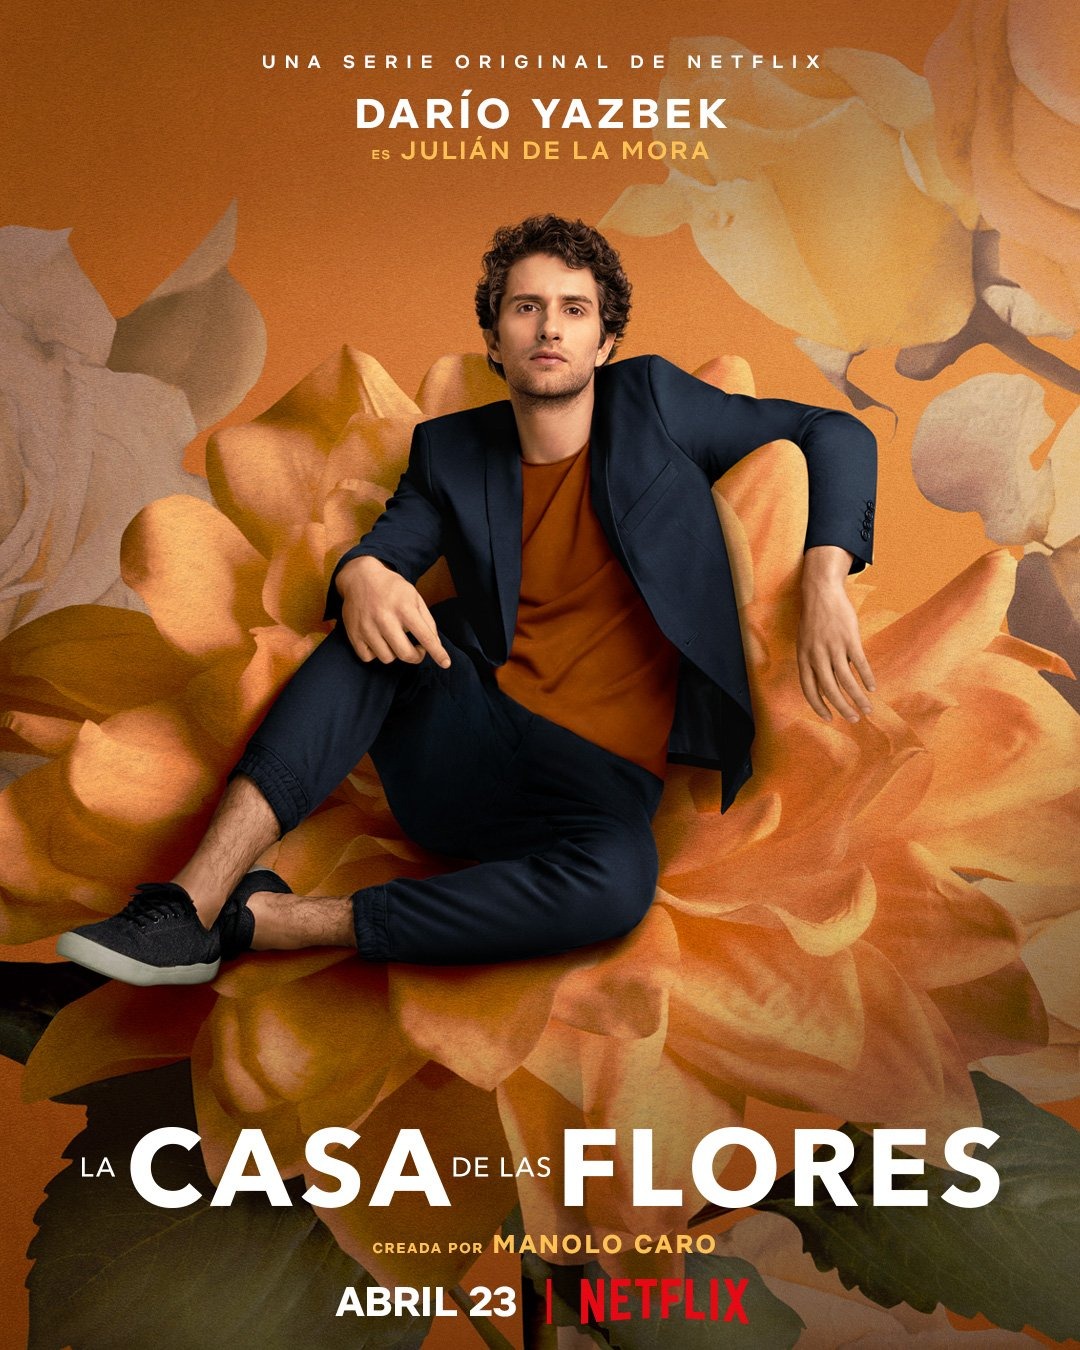 Extra Large TV Poster Image for La casa de las flores (#19 of 19)